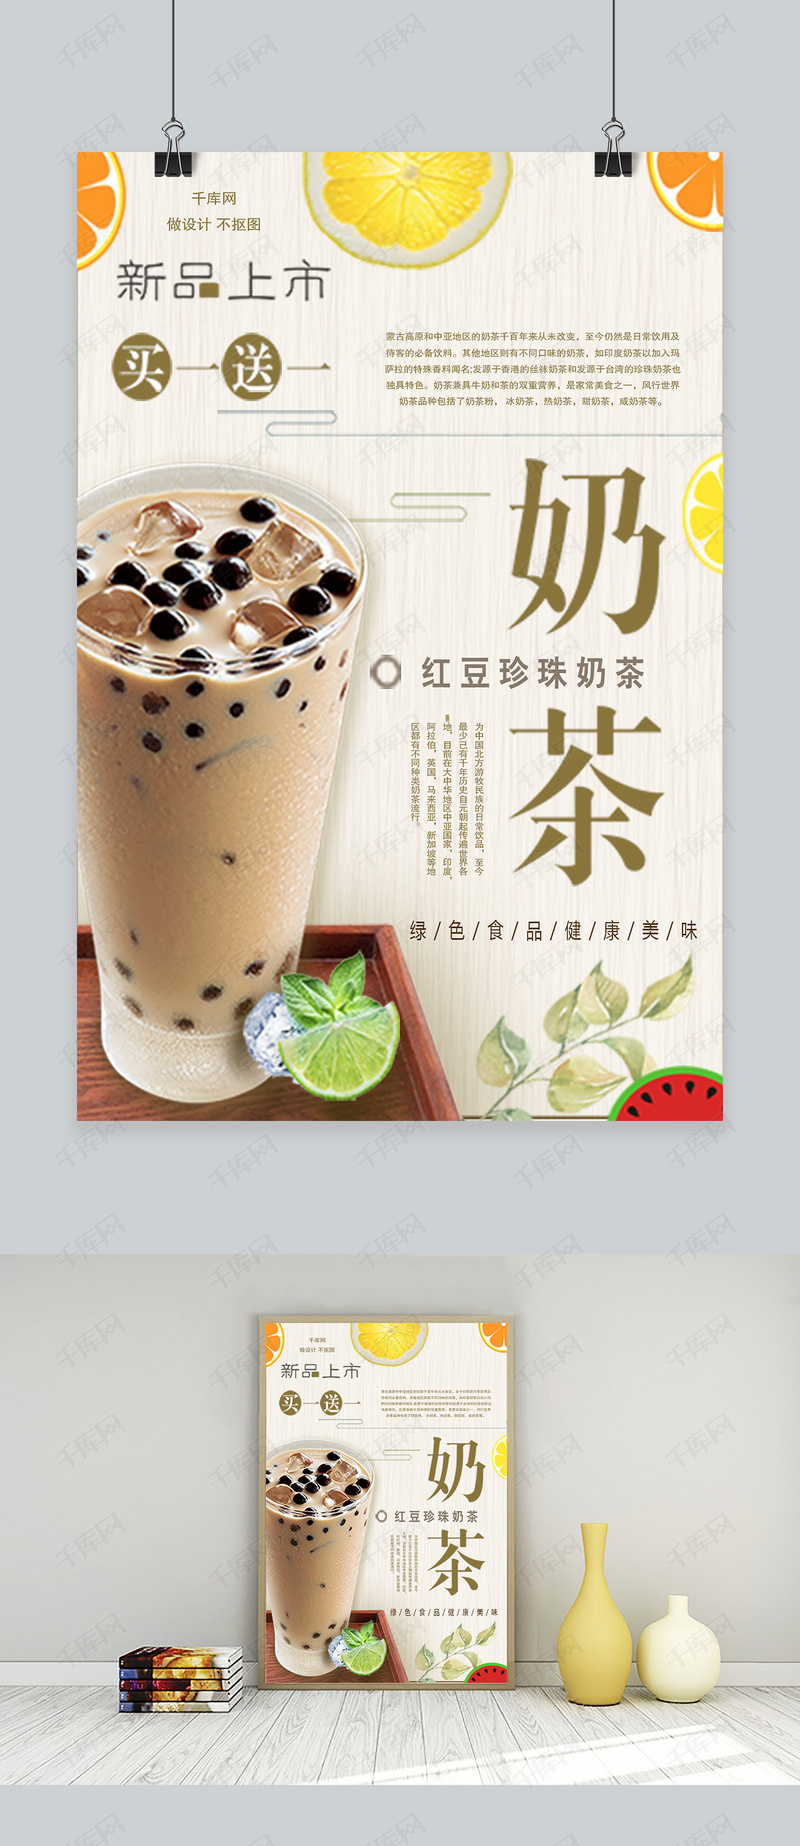 简约大气奶茶宣传海报